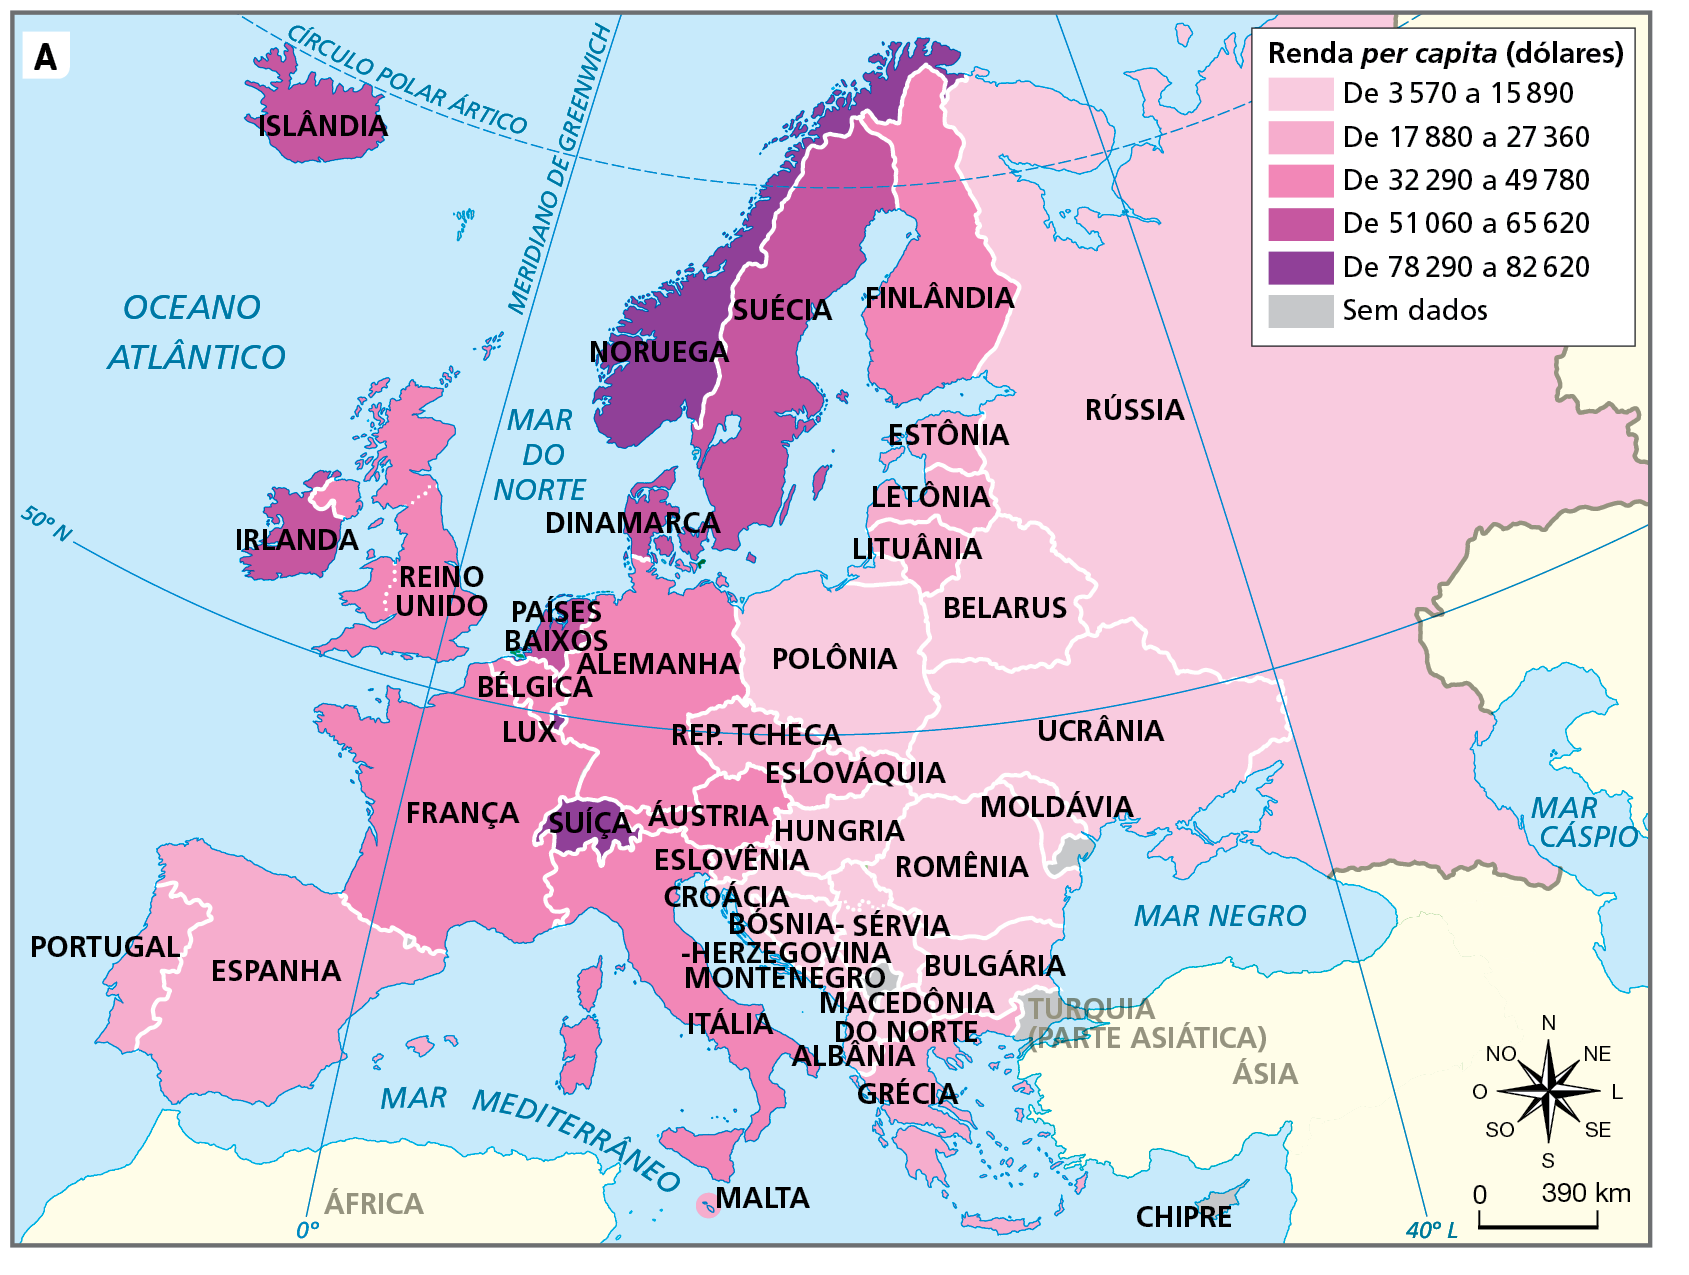 Mapa A. Europa e União Europeia: renda per capita, 2020. Mapa representando a renda per capita dos países do continente europeu.
Renda per capita (dólares): 
De 3.570 a 15.890 dólares: Rússia, Belarus, Ucrânia, Romênia, Moldávia, Polônia, Sérvia, Bulgária, Macedônia do Norte, Hungria, Croácia, Bósnia-Herzegovina, Montenegro e Albânia. 
De 17.880 a 27.360 dólares: República Tcheca, Eslováquia, Estônia, Letônia, Lituânia, Eslovênia, Grécia, Malta, Portugal e Espanha. 
De 32.290 a 49.780 dólares: Finlândia, Alemanha, Itália, França, Reino Unido, Bélgica e Áustria.
De 51.060 a 65.620 dólares: Islândia, Irlanda, Suécia, Países Baixos e Dinamarca.
De 78.290 a 82.620 dólares: Noruega, Luxemburgo e Suíça.
Sem dados: Chipre,  Montenegro, Turquia e Kosovo.
Na parte inferior, rosa dos ventos e escala de 0 a 390 quilômetros.